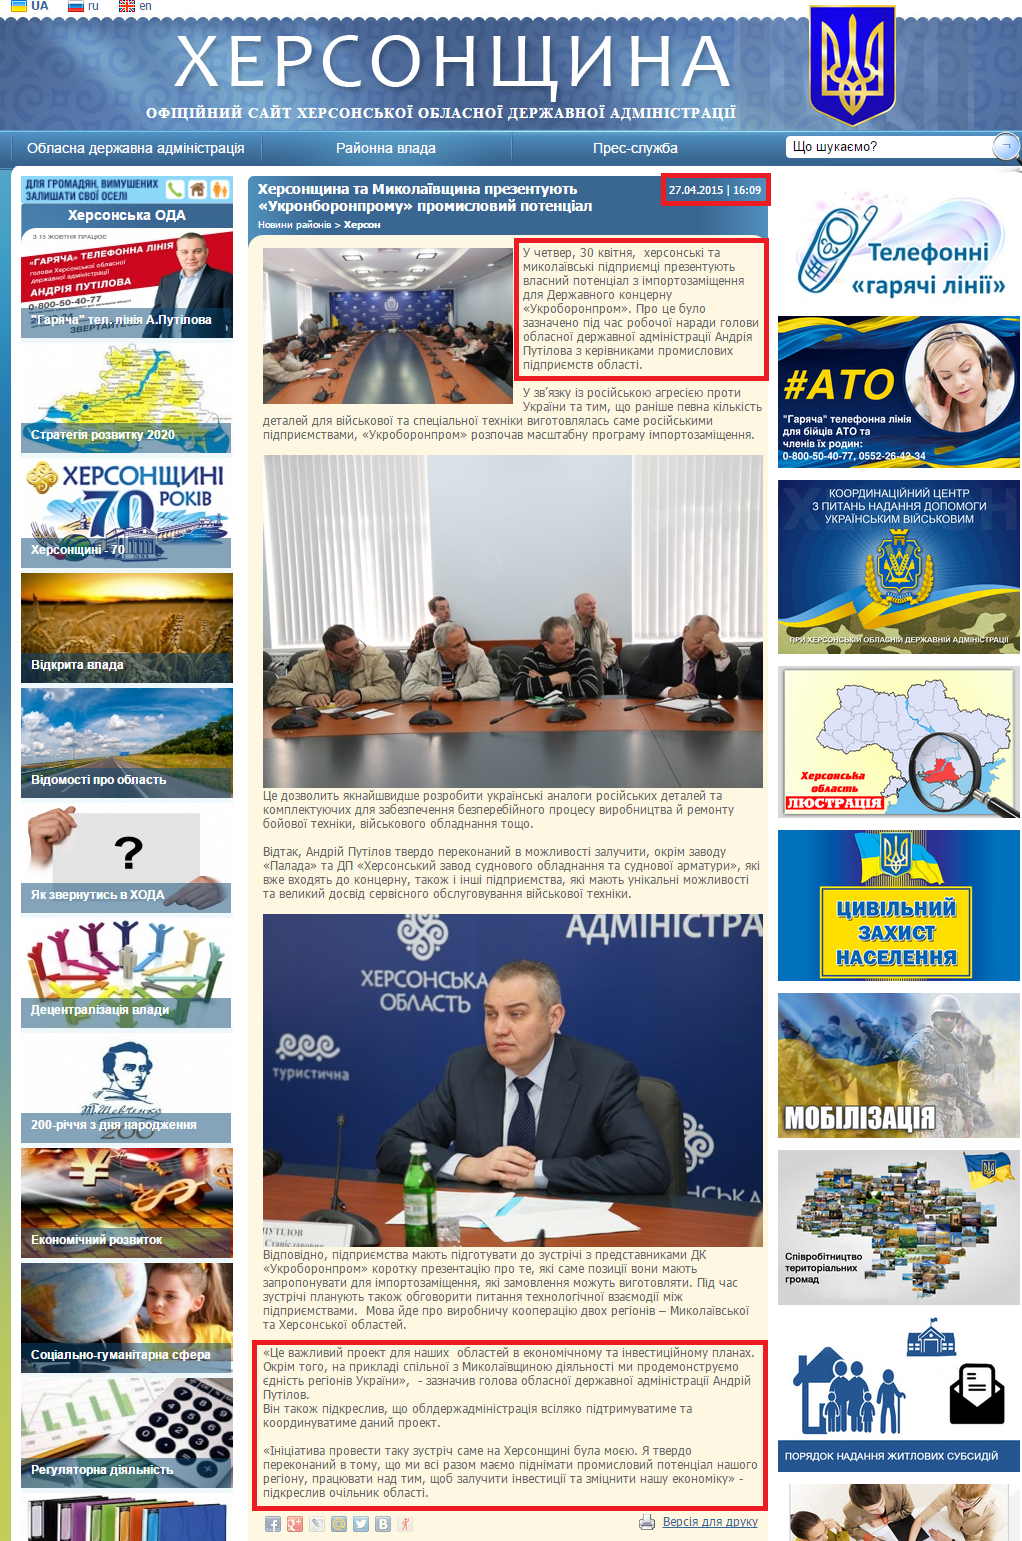 http://www.khoda.gov.ua/ua/news/hersonshhina-i-nikolaevshhina-prezentuyut-ukronboronpromu-promyshlennyjj-potencial